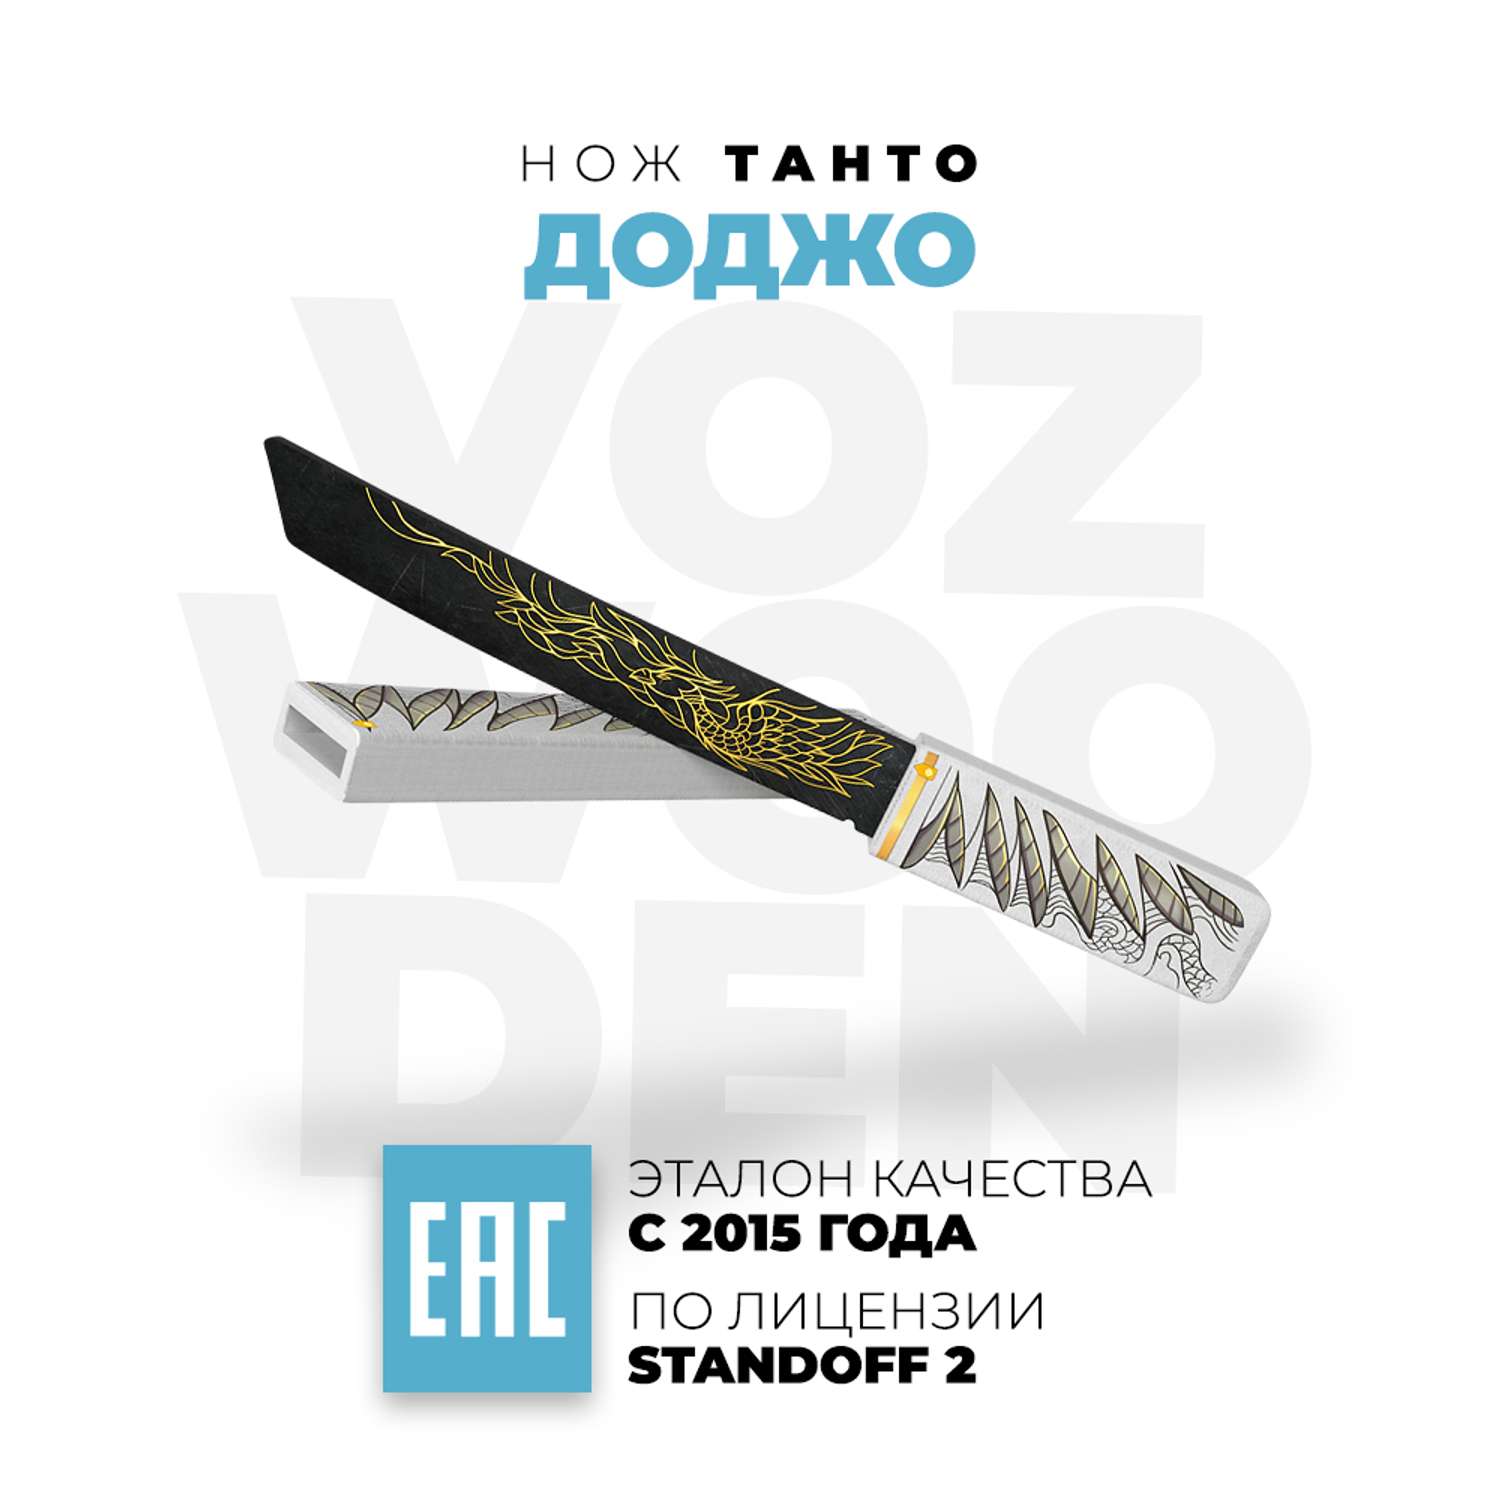 Нож Танто VozWooden Доджо Стандофф 2 деревянный - фото 1